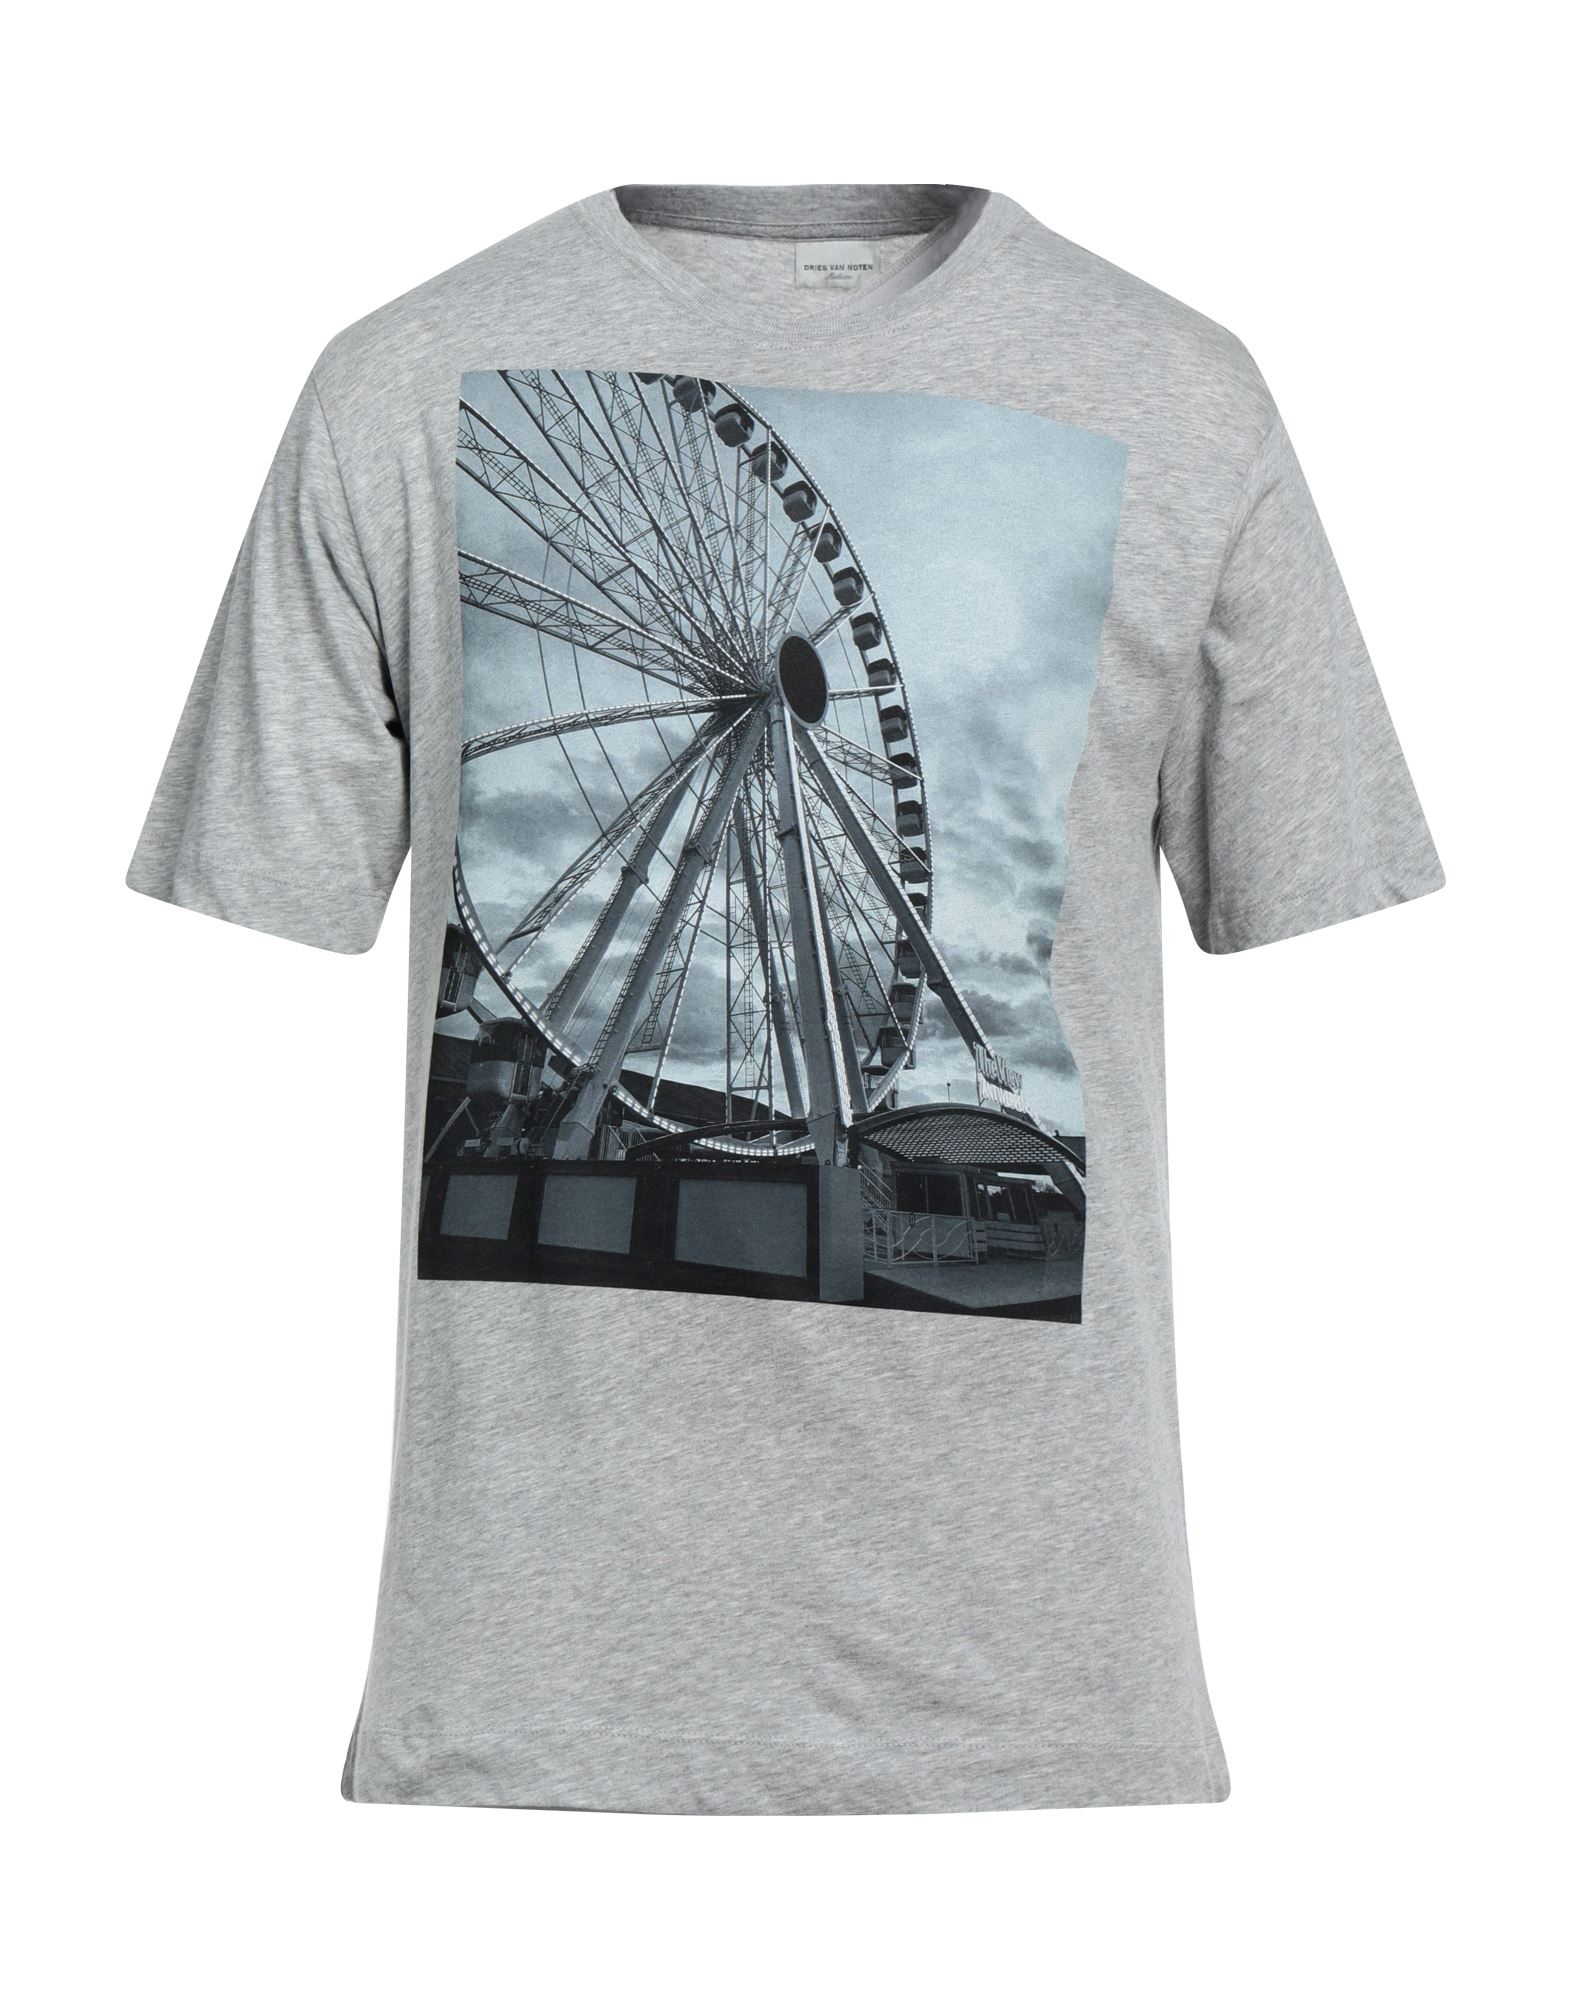 Dries Van Noten T-shirts In Grey